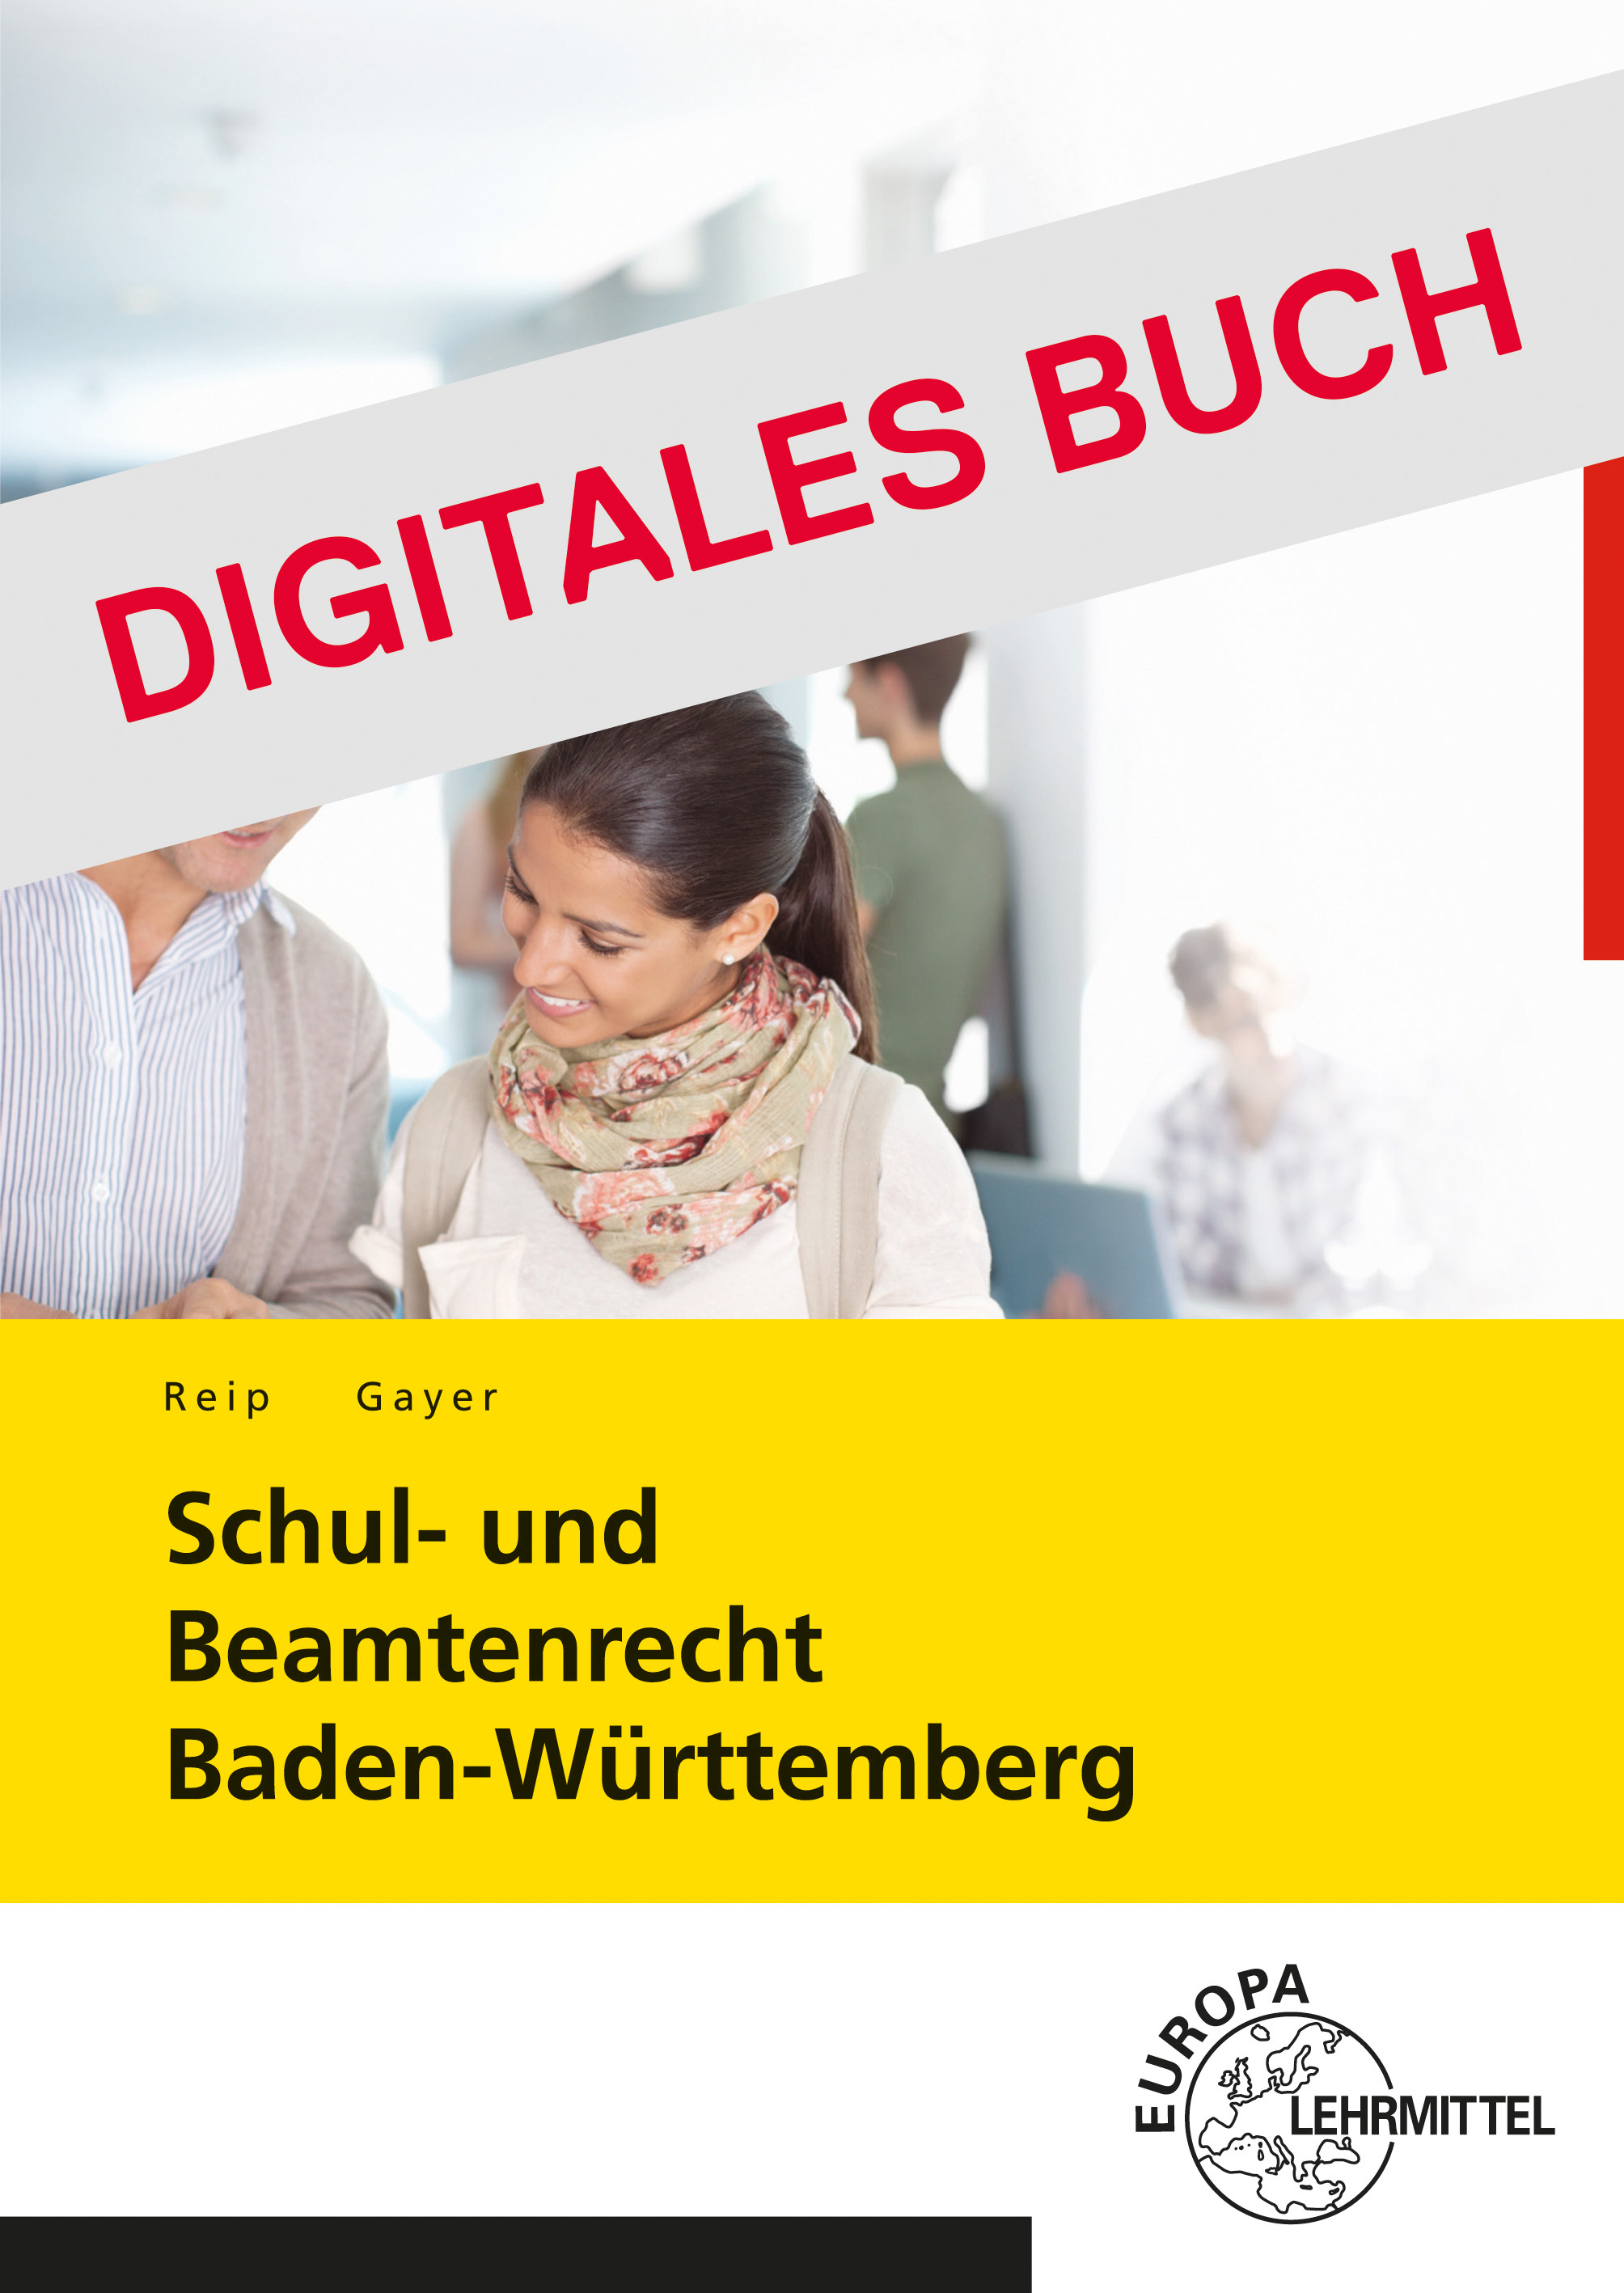 Schul- und Beamtenrecht Baden-Württemberg - Digitales Buch